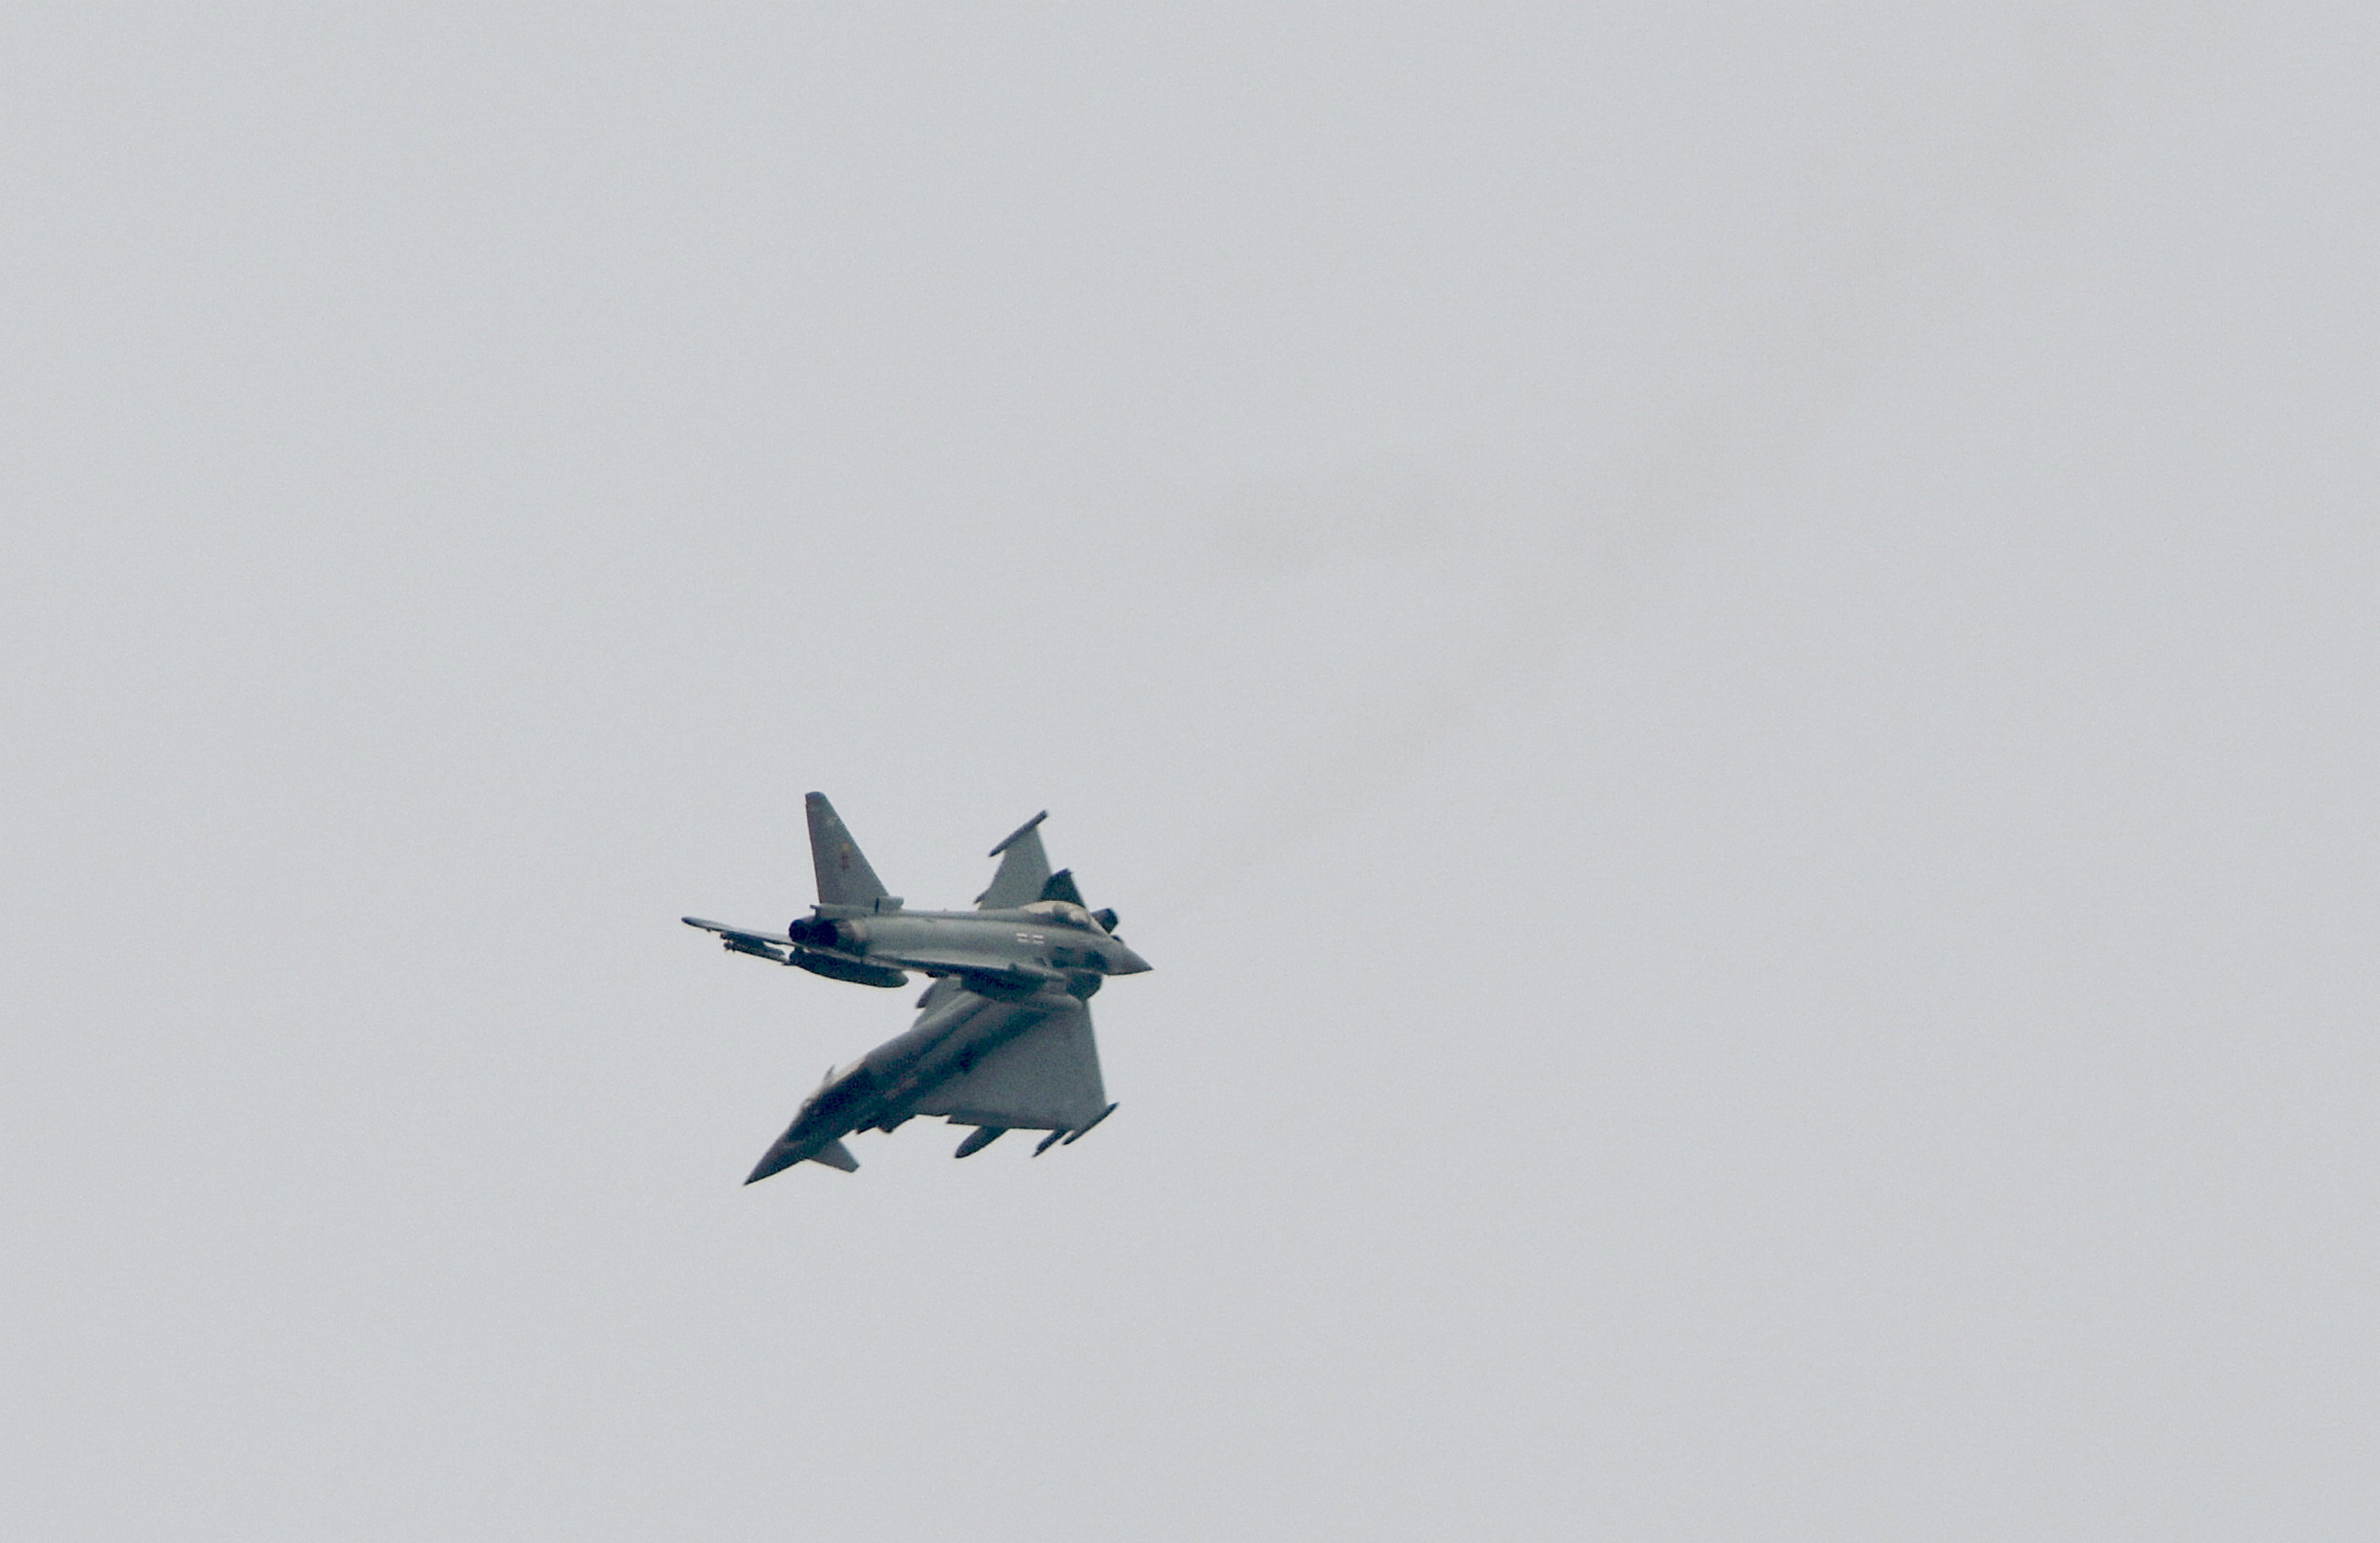 Der Fotograf sagt, er sehe regelmäßig Flugzeuge der RAF Coningsby, die geschickte Kampfmanöver üben